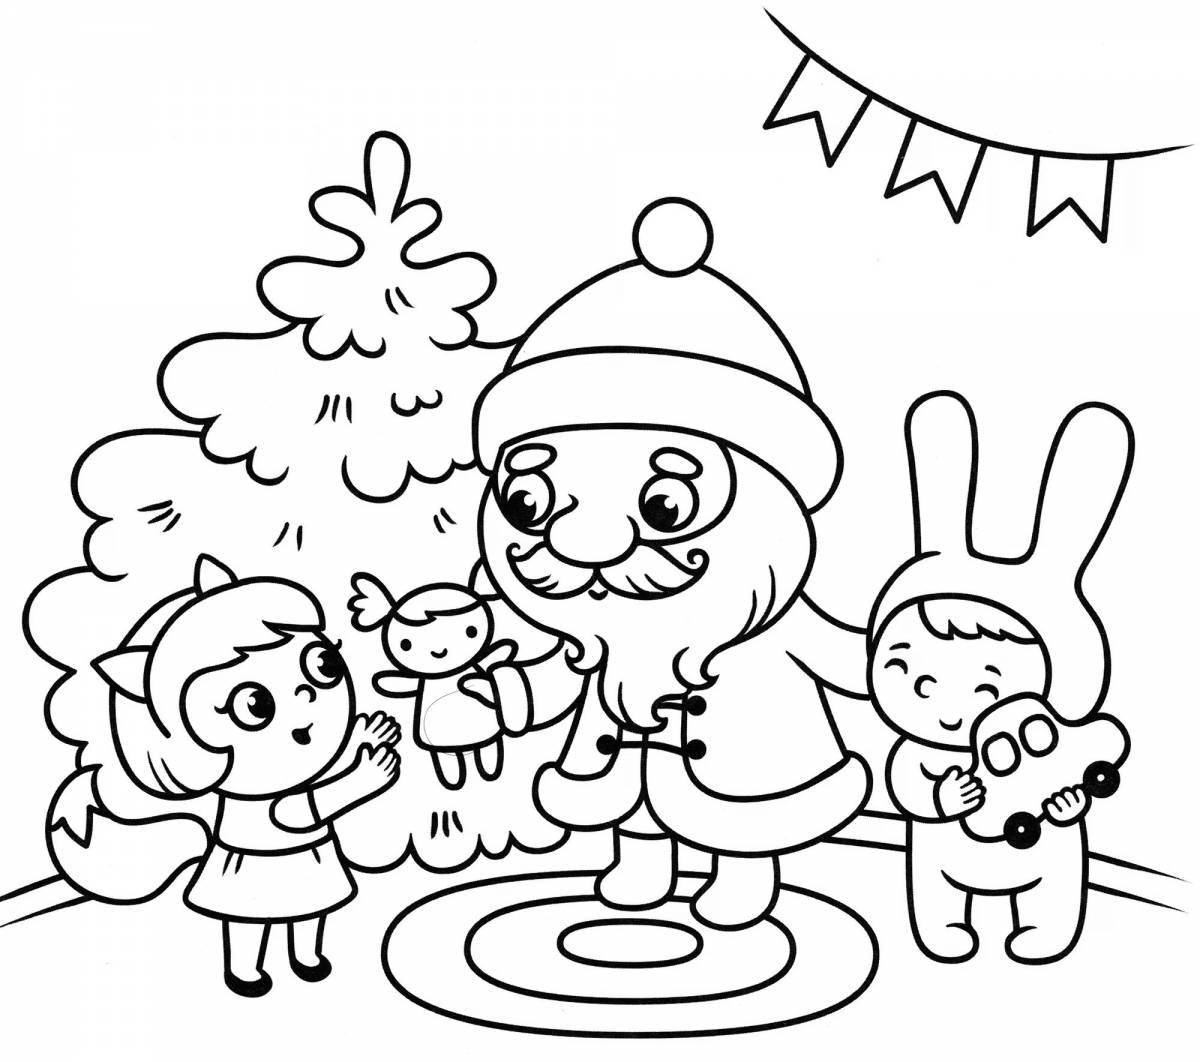 Праздничная раскраска санта-клауса для детей 2-3 лет